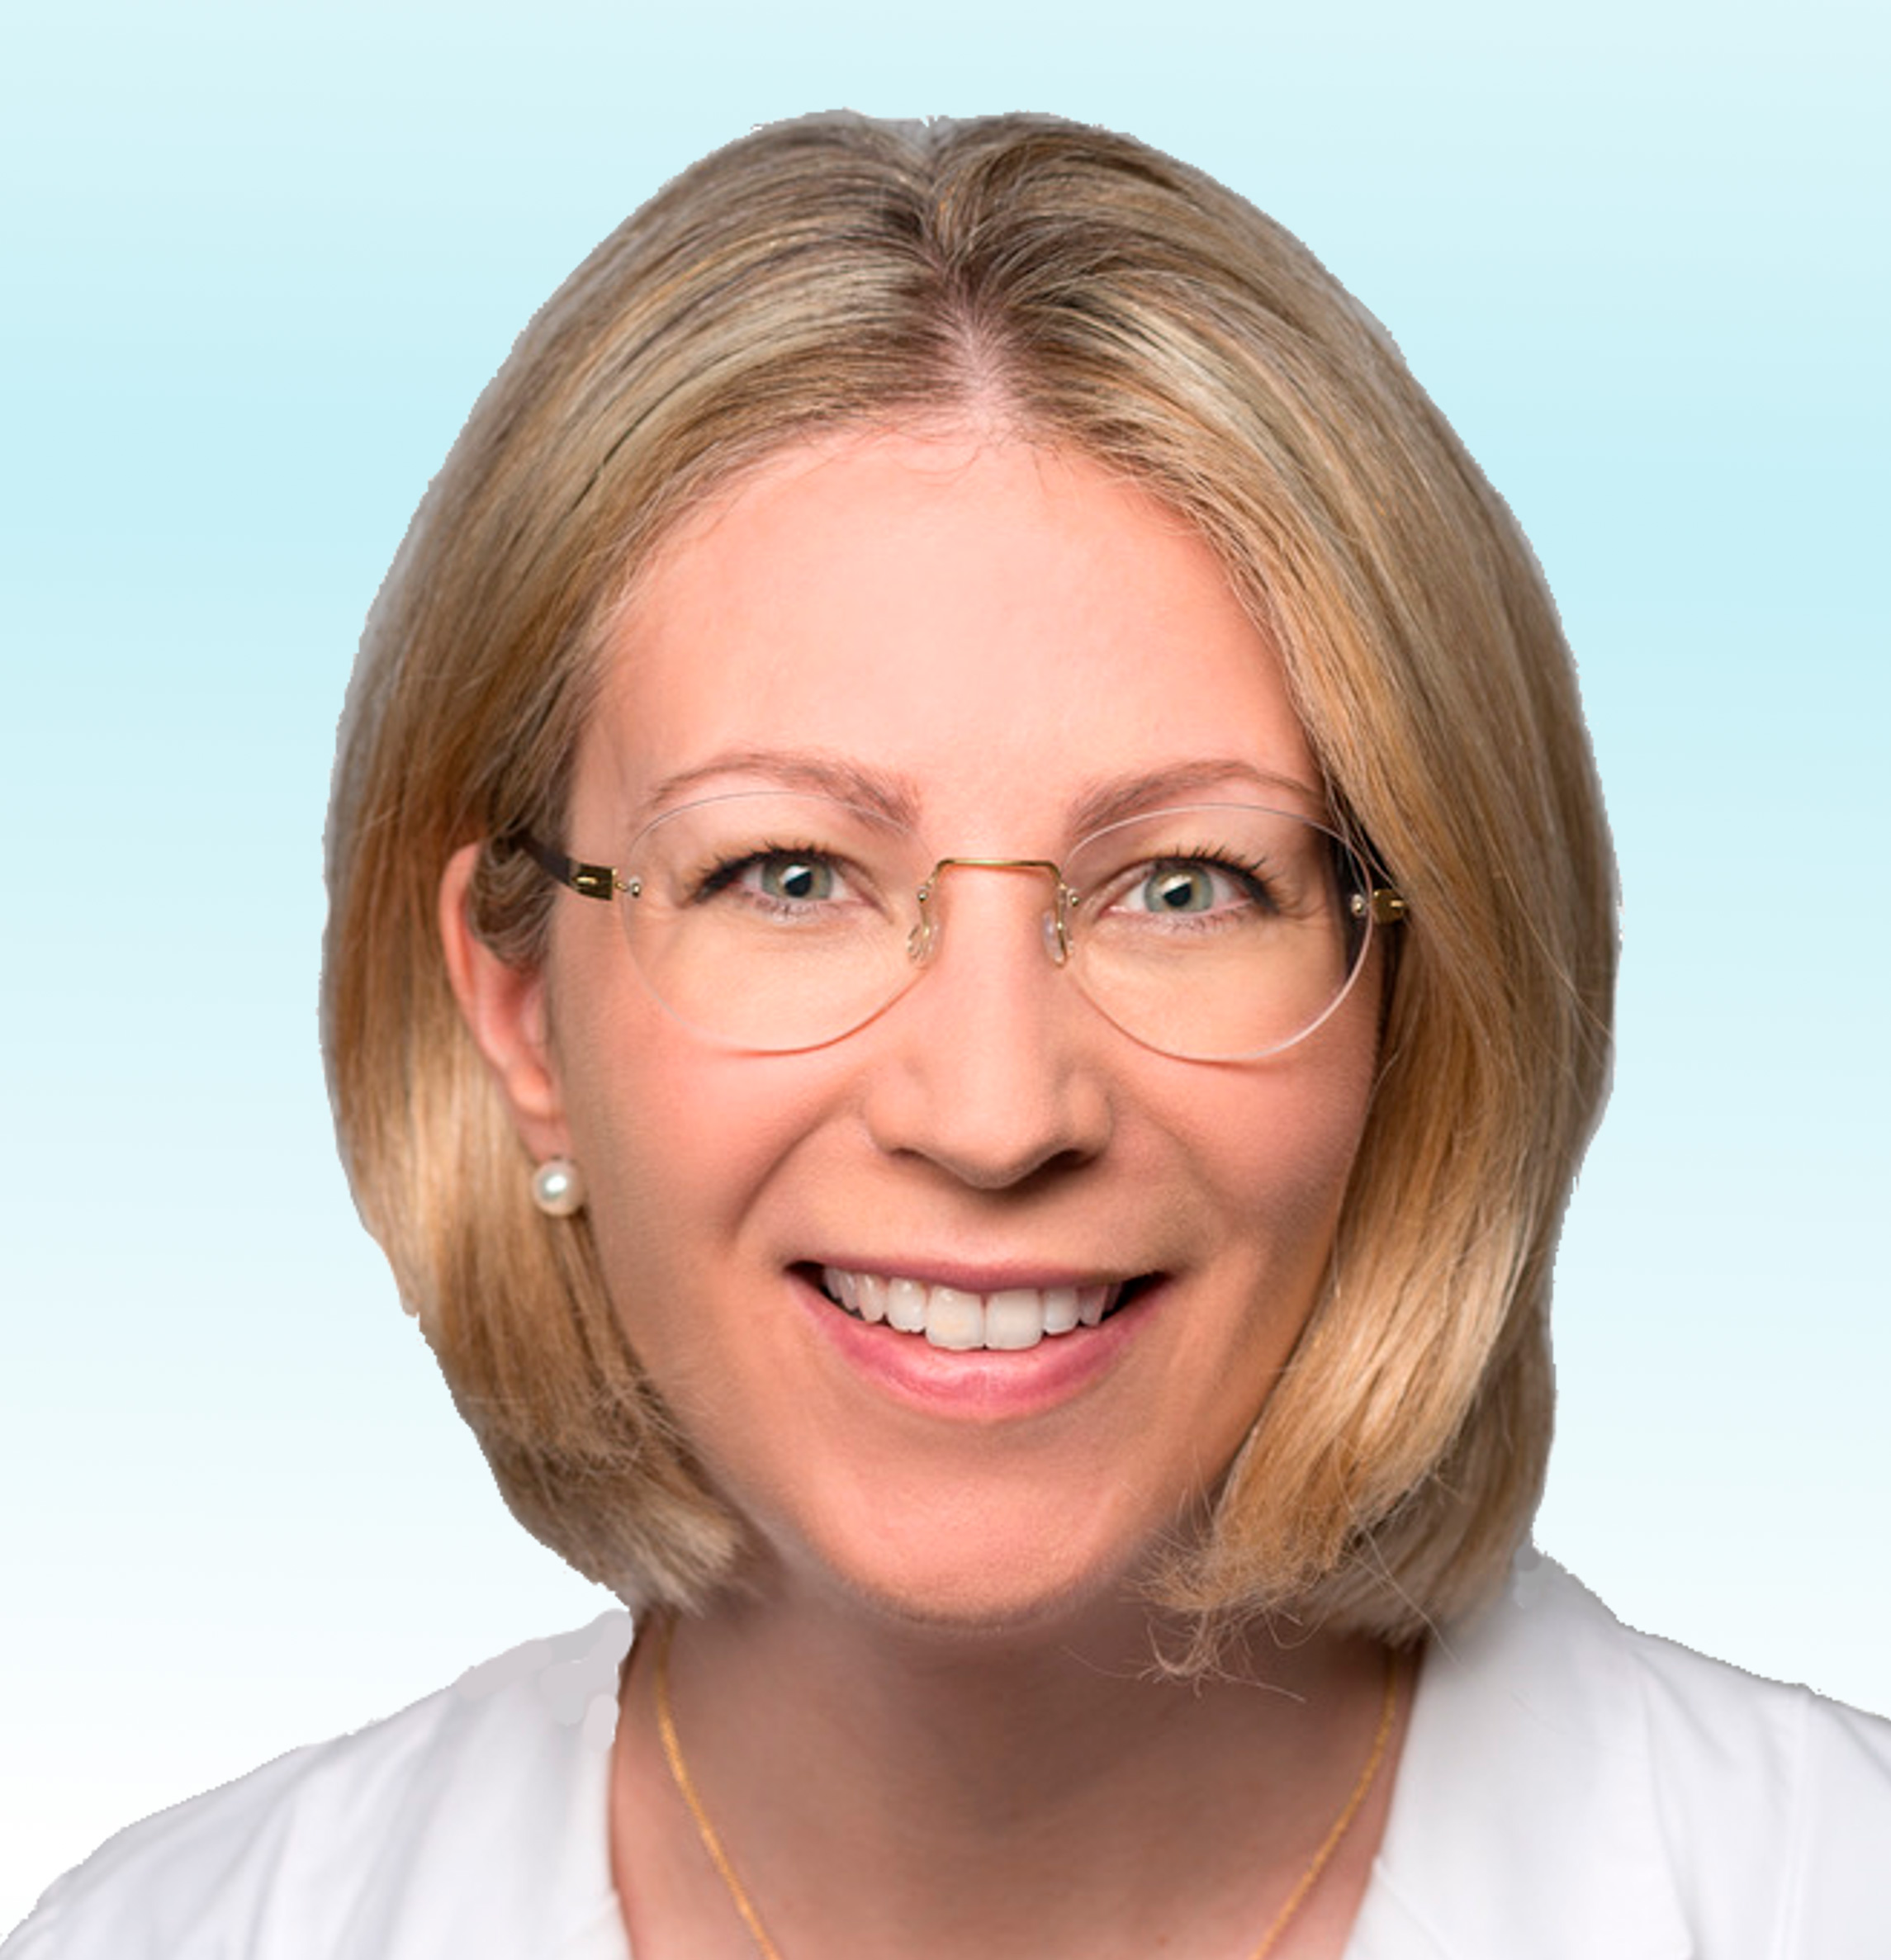 Dermatologue, Dr. med. Michela Corti